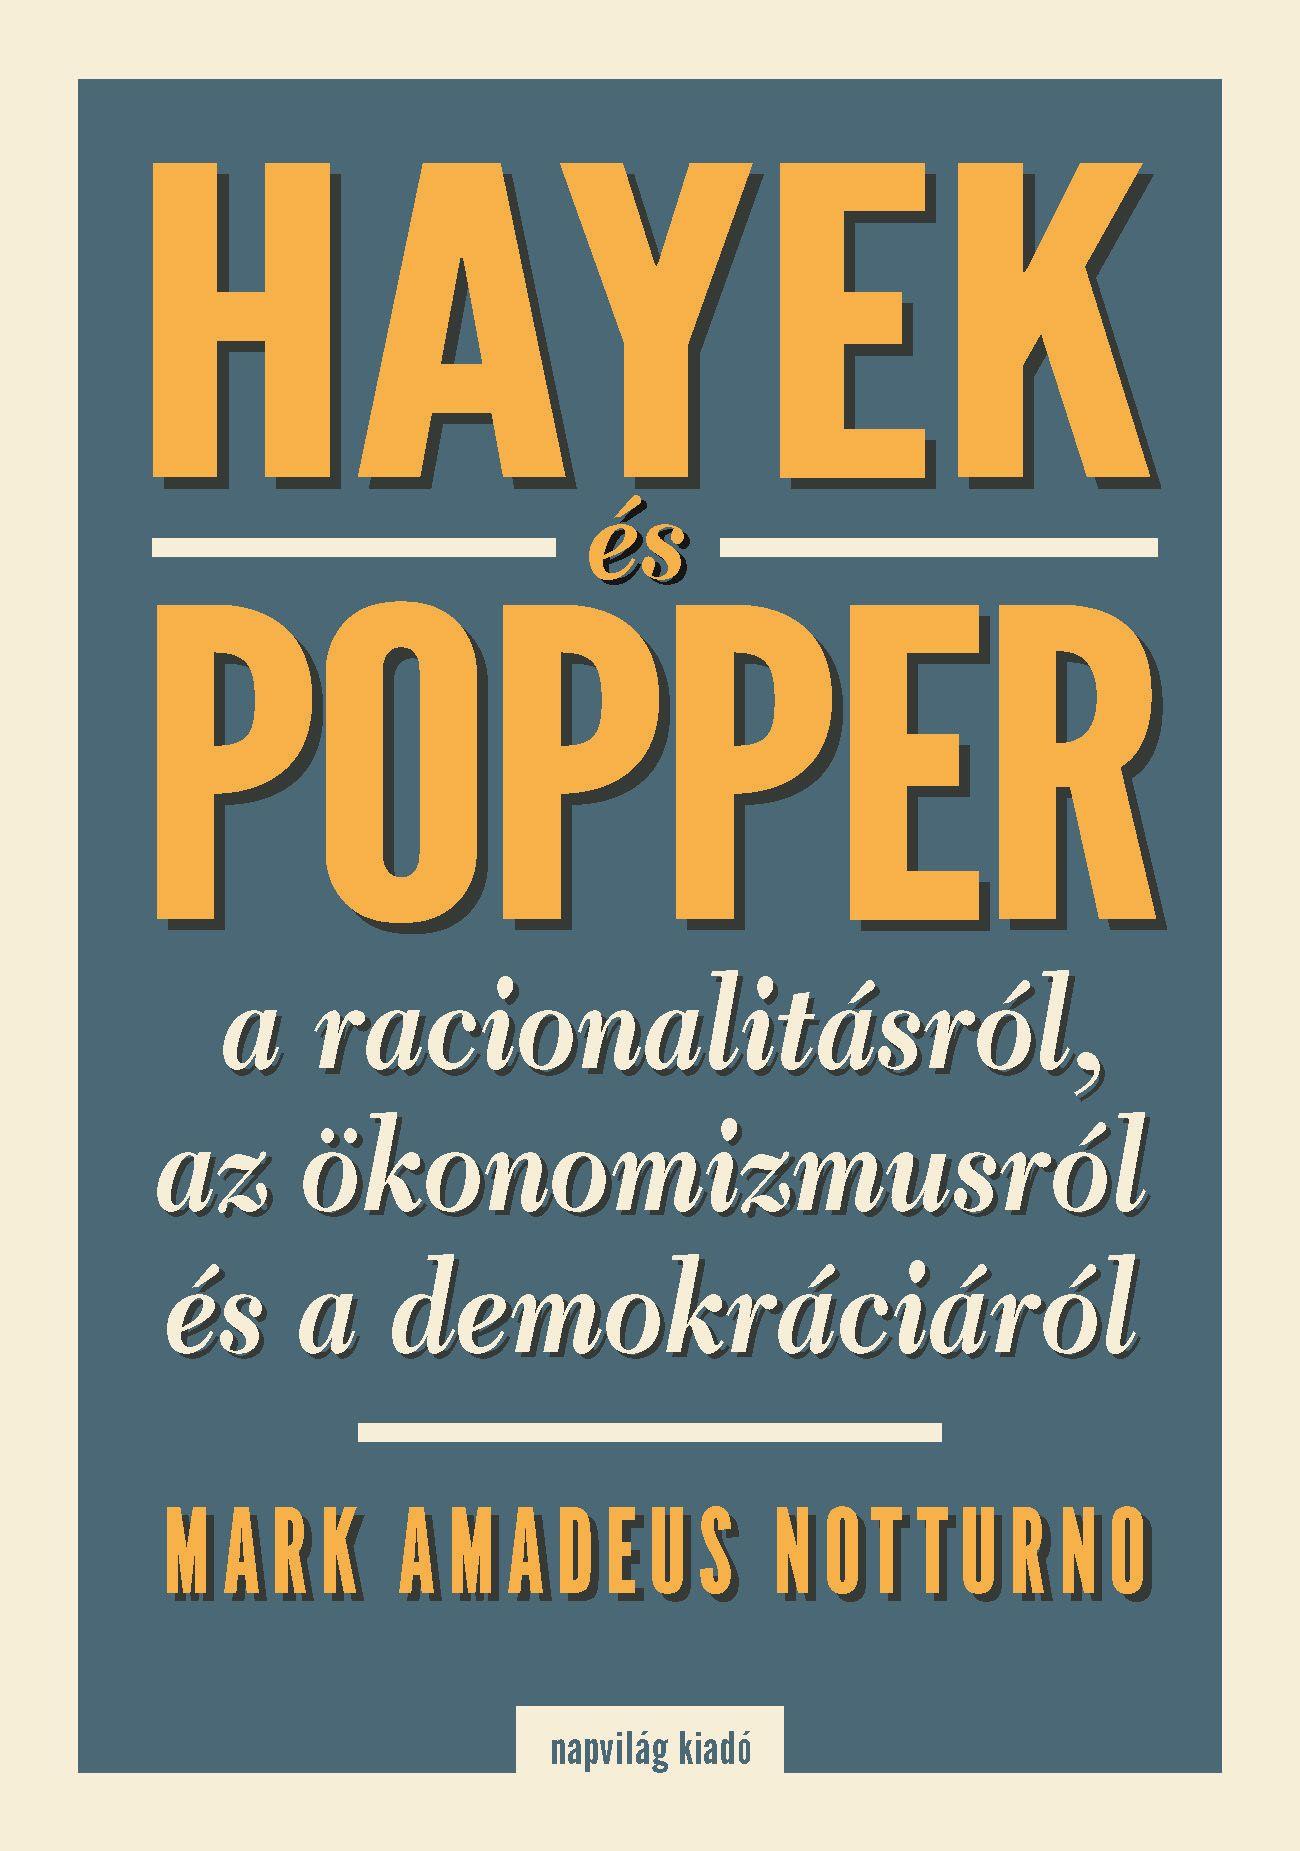 Mark Amadeus Notturno - Hayek és Popper a racionalitásról, az ökönomizmusról és a demokráciáról